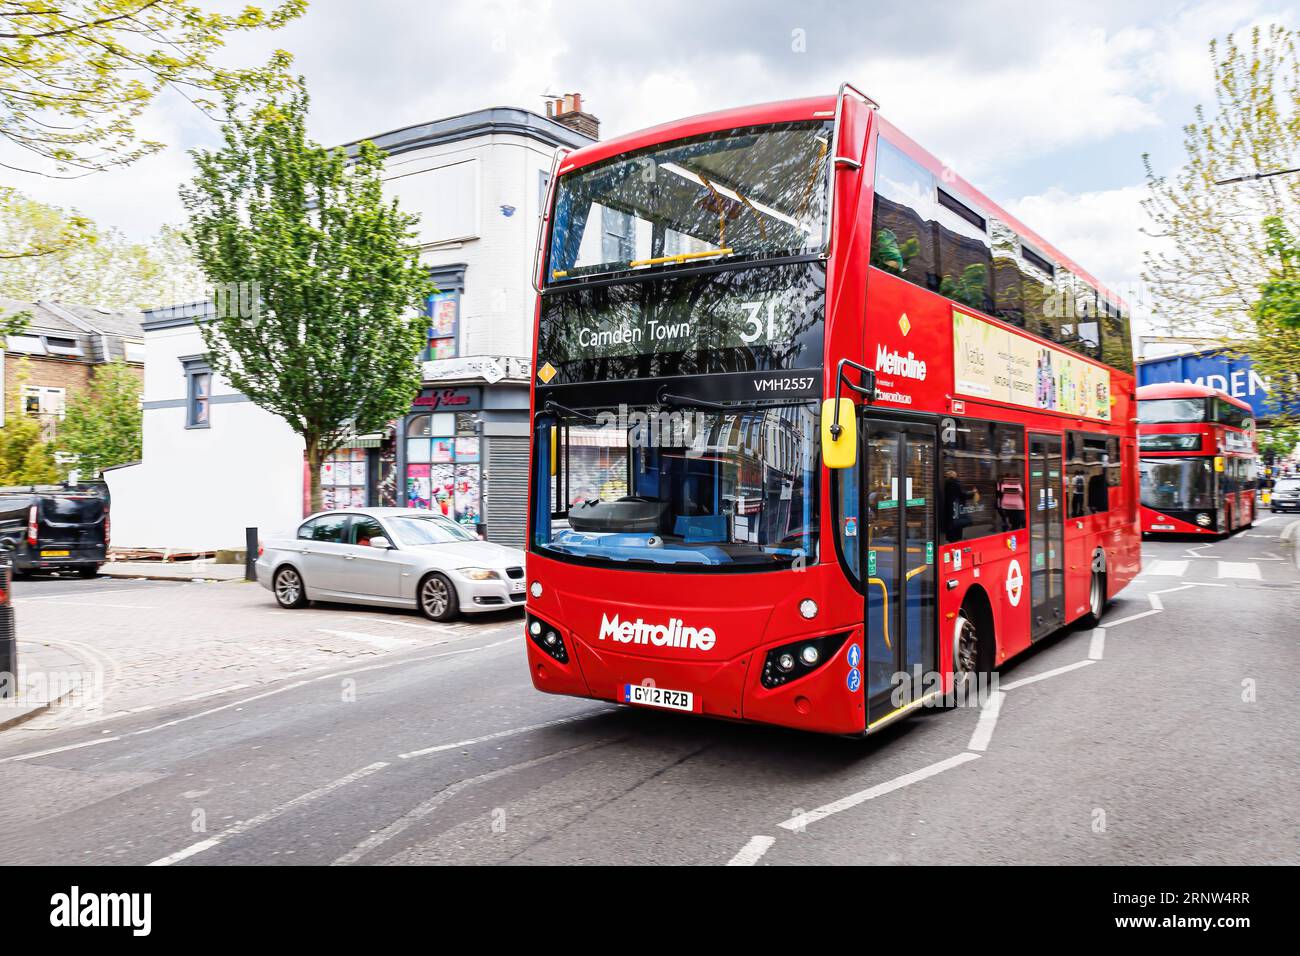 Londra, Regno Unito - 23 maggio 2023: Autobus rosso a due piani con trasporto pubblico a Camden Town, simbolo nazionale dell'Inghilterra, Regno Unito Foto Stock